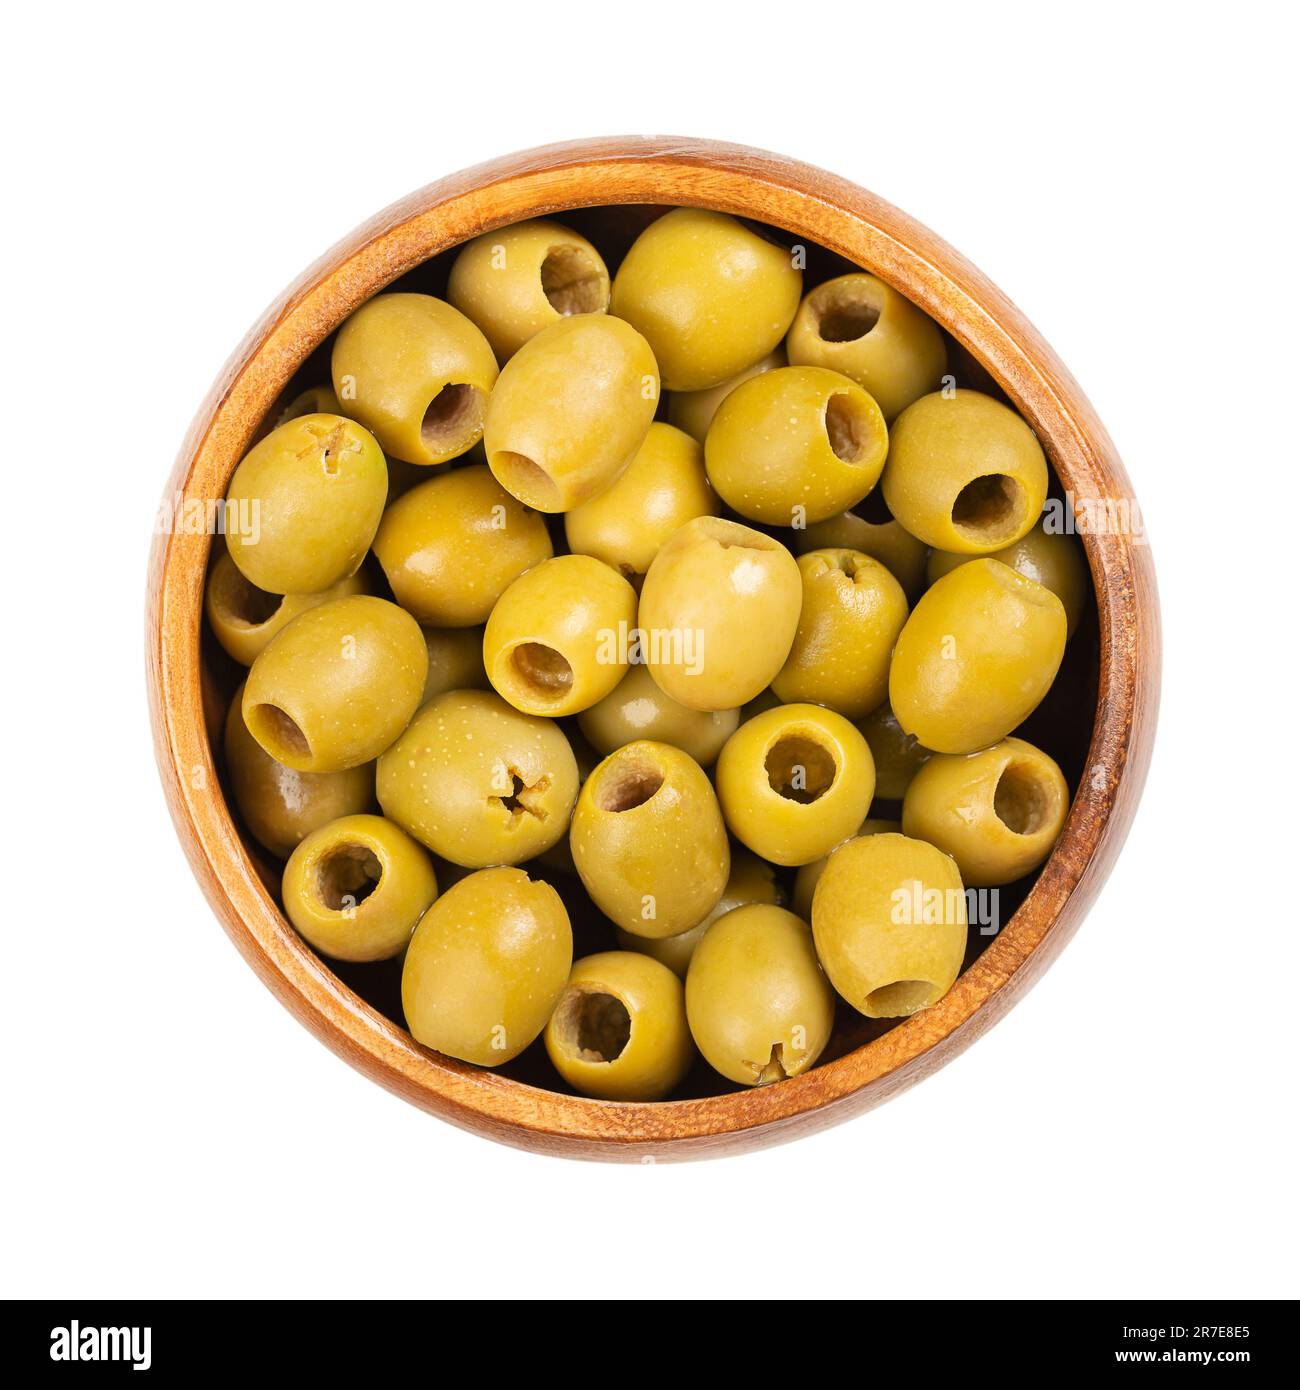 Olives vertes dénoyautées pour grignoter, dans un bol en bois. Prêt à manger, petites olives de table en provenance d'Espagne, traitées après élimination des grains, conservées en saumure. Banque D'Images